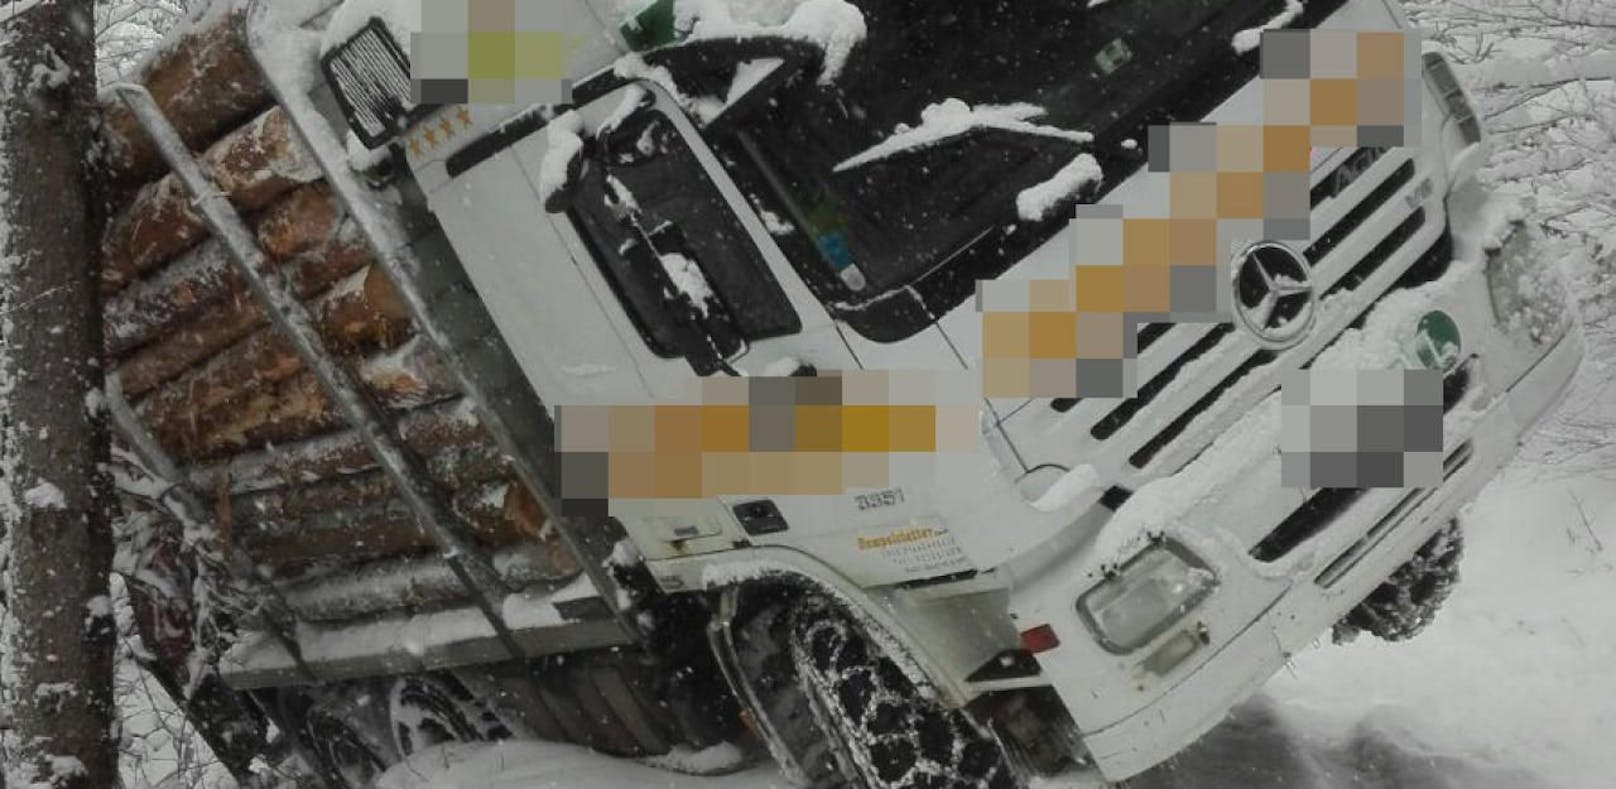 Baum bewahrte Lkw nach Schnee-Crash vor Absturz